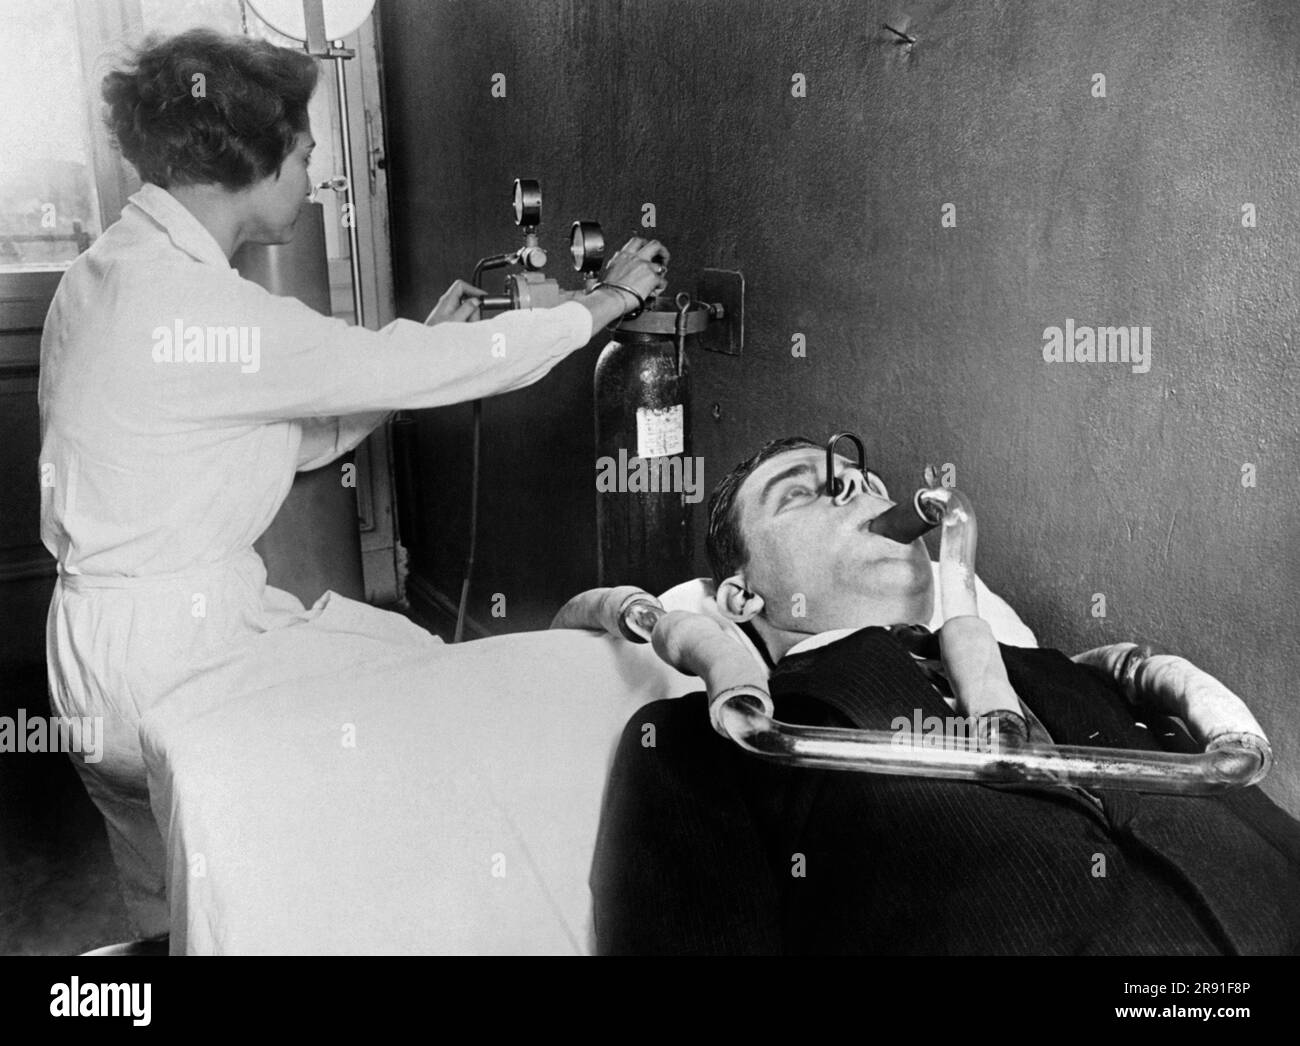 Berlin, Allemagne: c. 1929 les chercheurs de l'Institut bactério-physiologique du Dr Piorkowski à Berlin utilisent les méthodes et les équipements les plus modernes dans la recherche sur les germes qui y est faite. Ici, un chercheur utilise l'un des nouveaux dispositifs d'un patient pour rechercher des germes. Banque D'Images